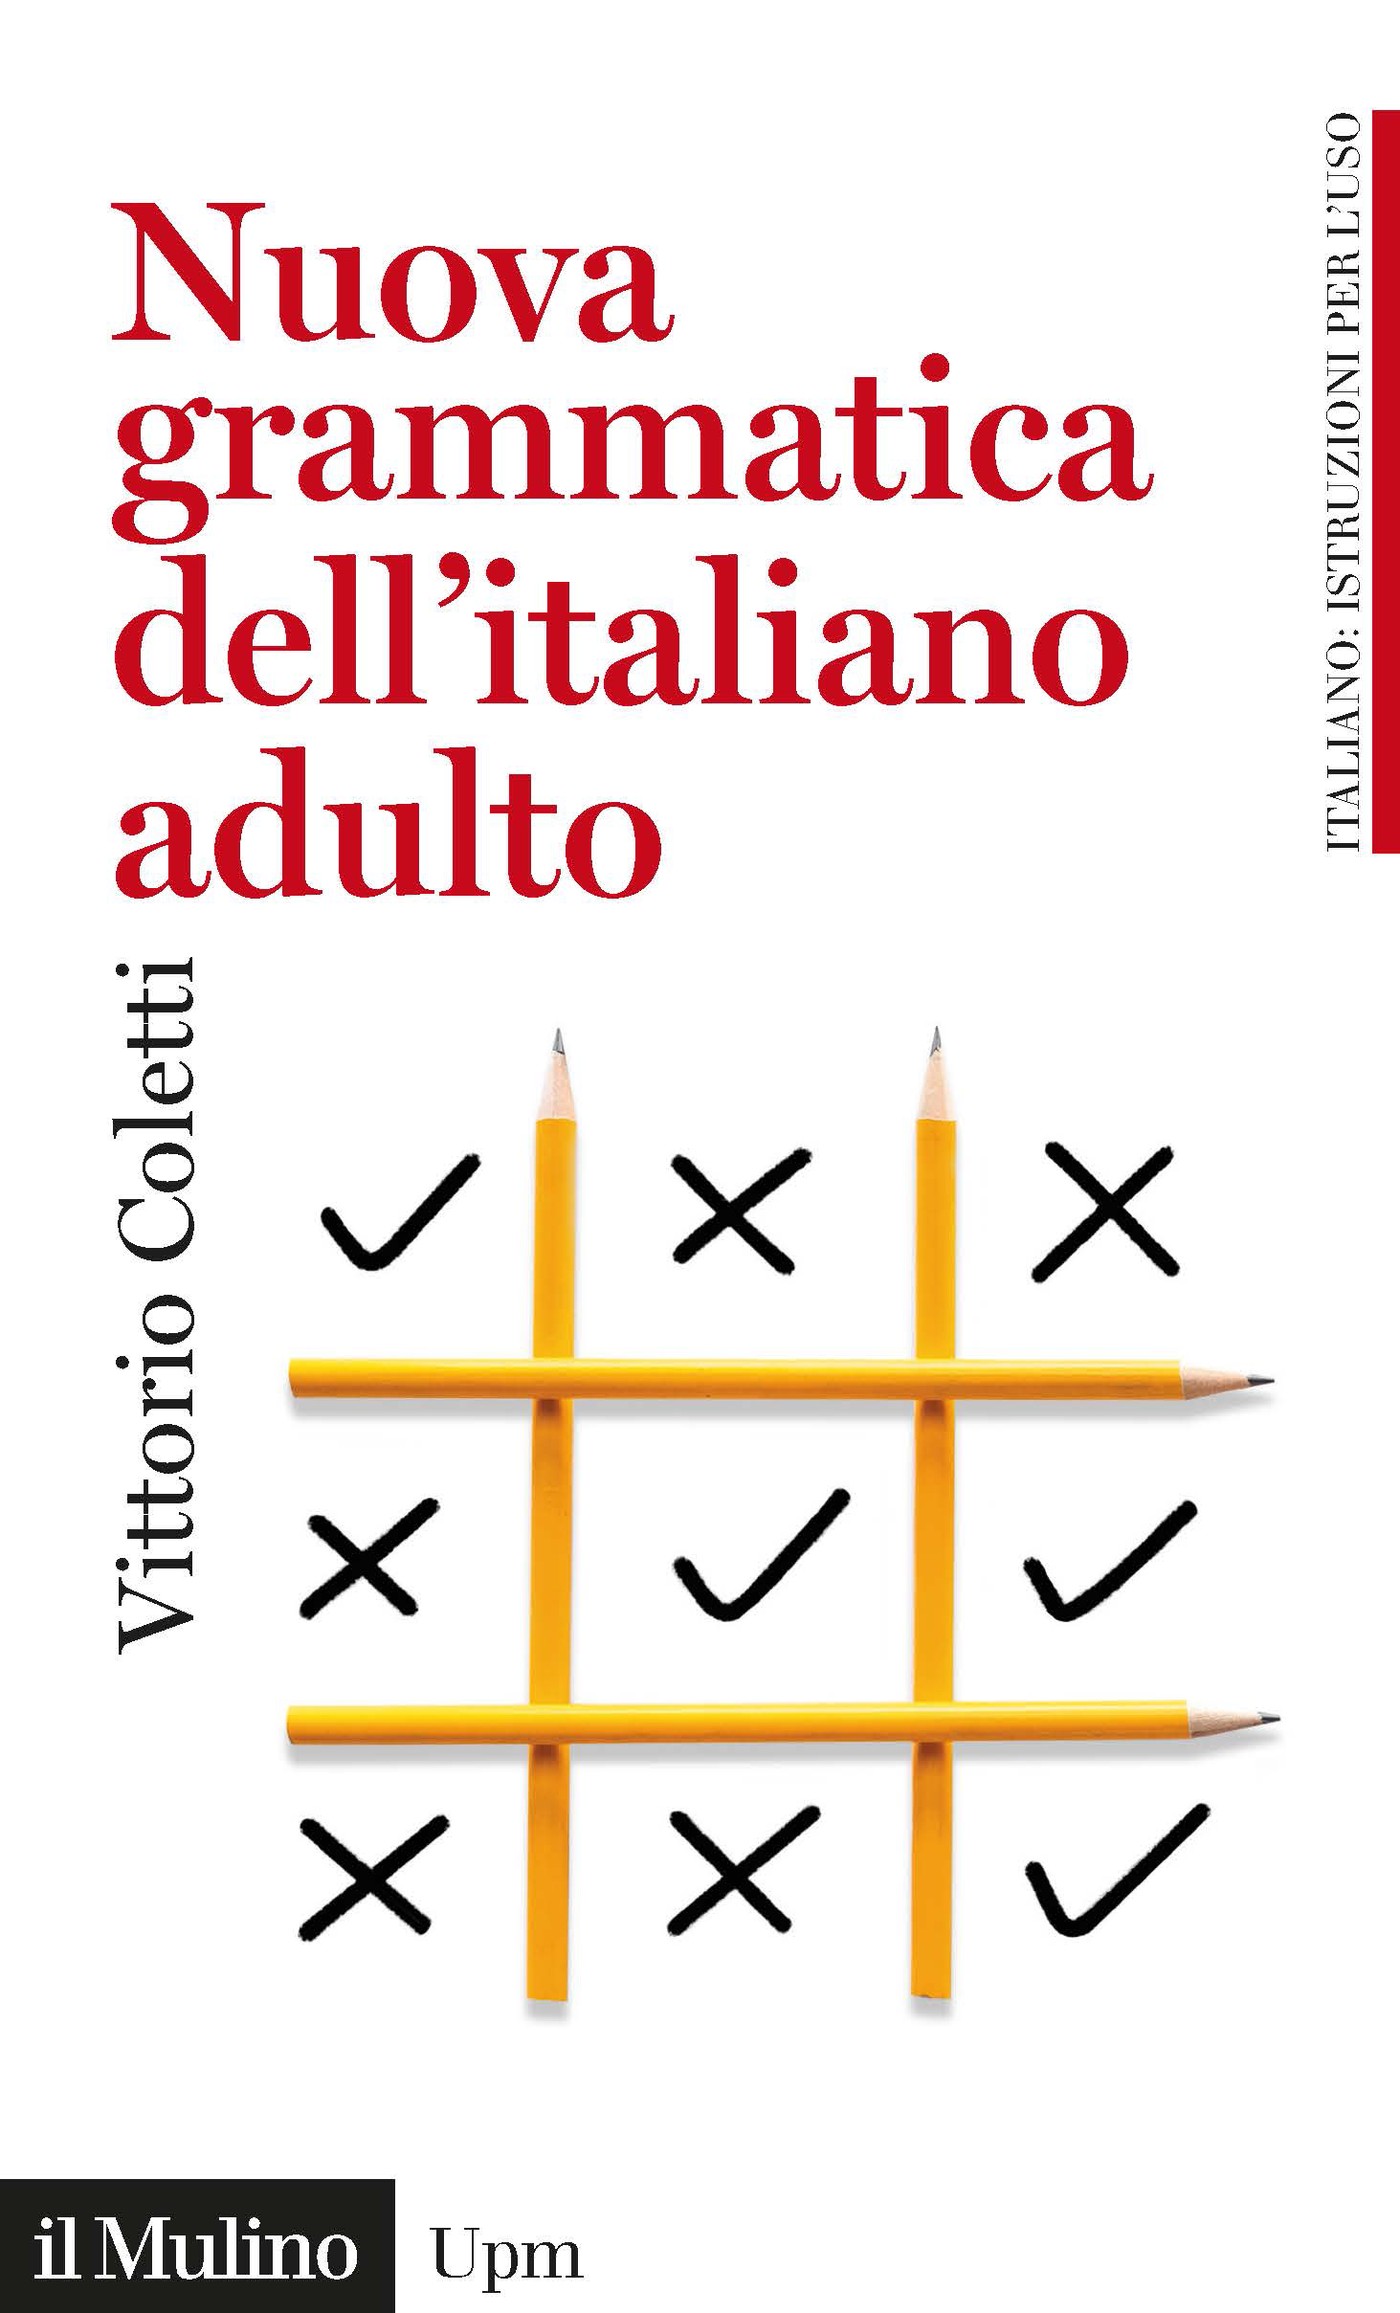 Grammatica dell'italiano adulto - Librerie.coop